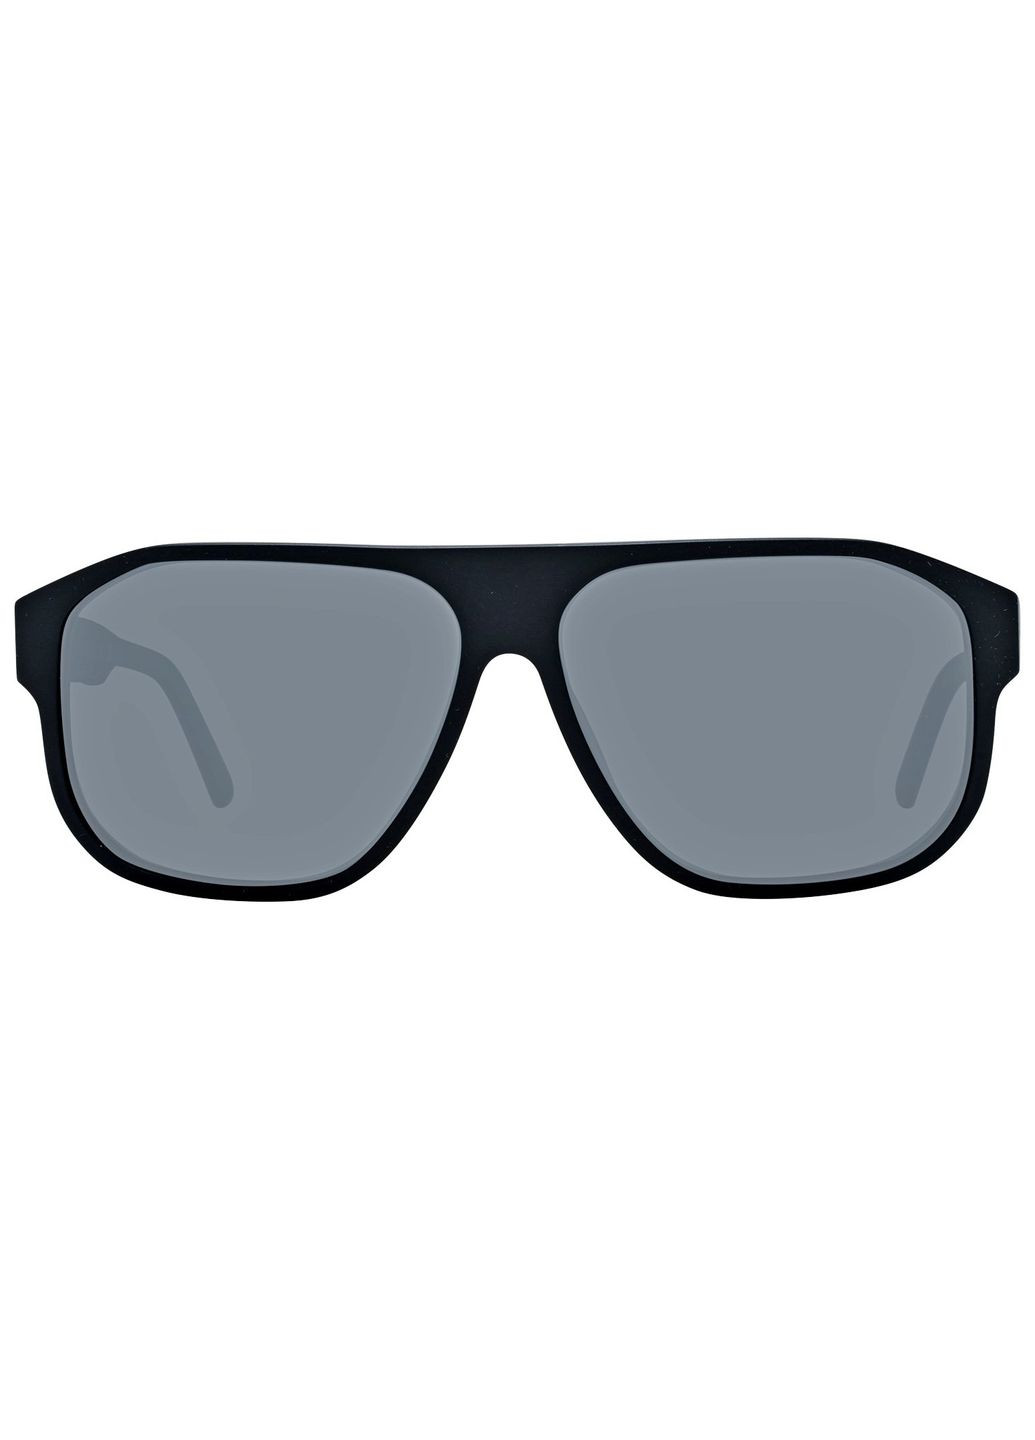 Солнцезащитные очки Harley Davidson hd0960x 02d (293275228)